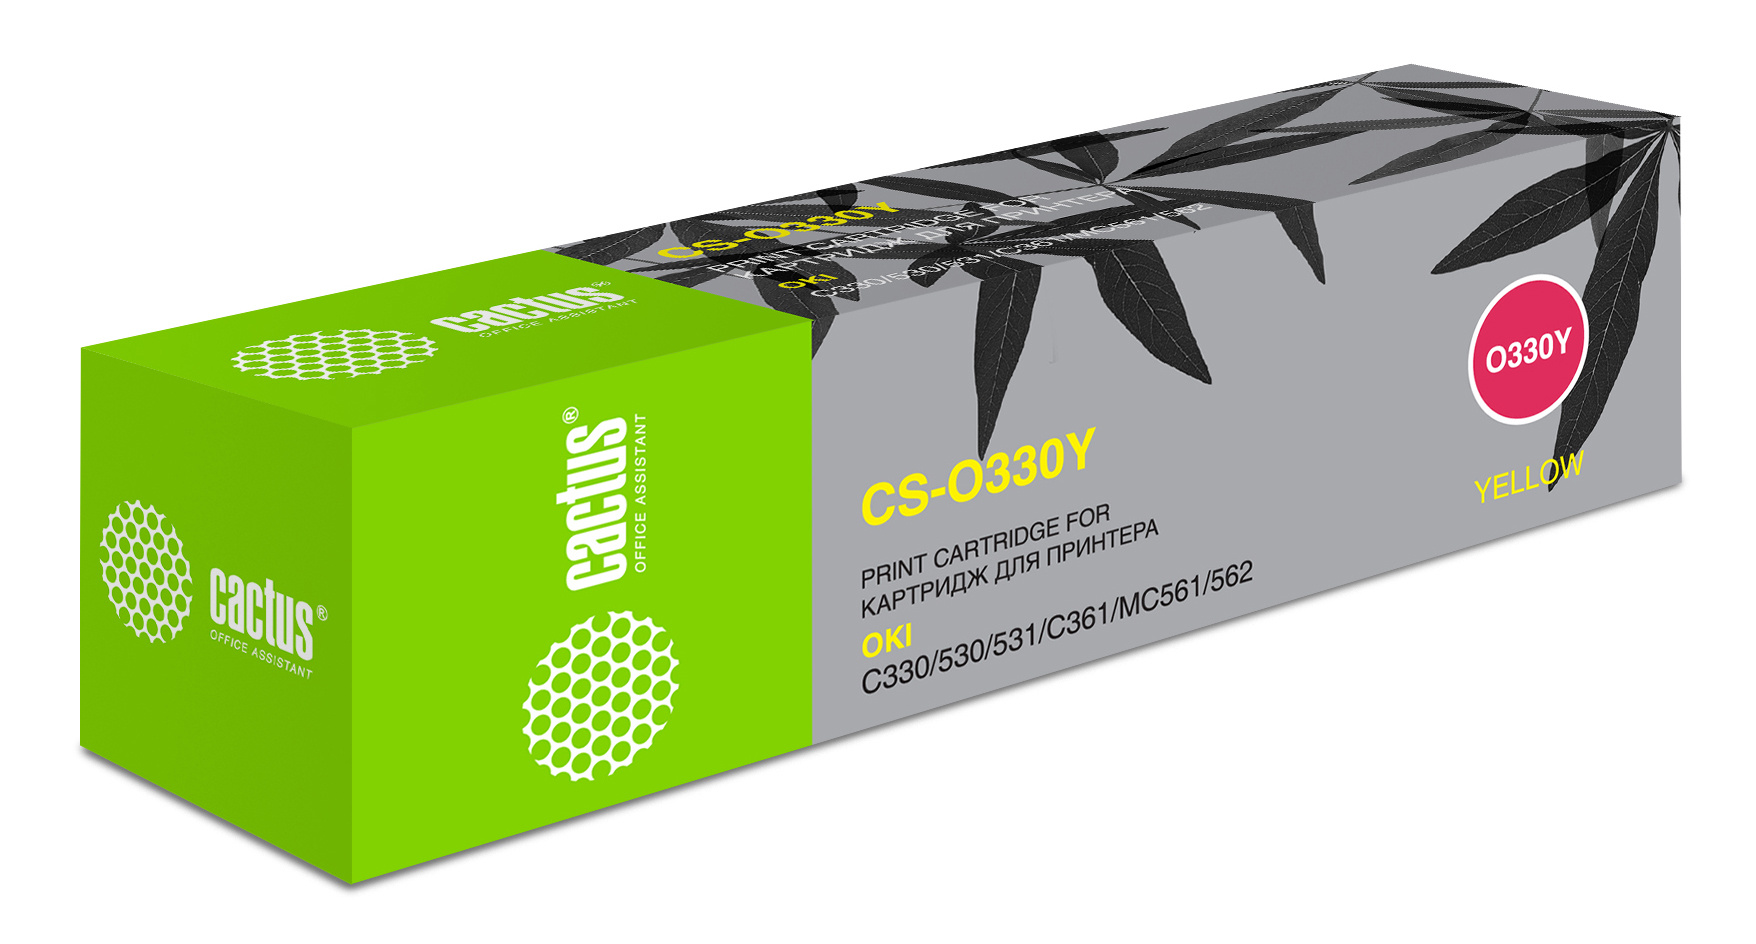 Картридж лазерный Cactus 44469714 CS-O330Y желтый (3000стр.) для Oki C330/C530 картридж лазерный cactus 44469716 cs o330c голубой 3000стр для oki c330 c530